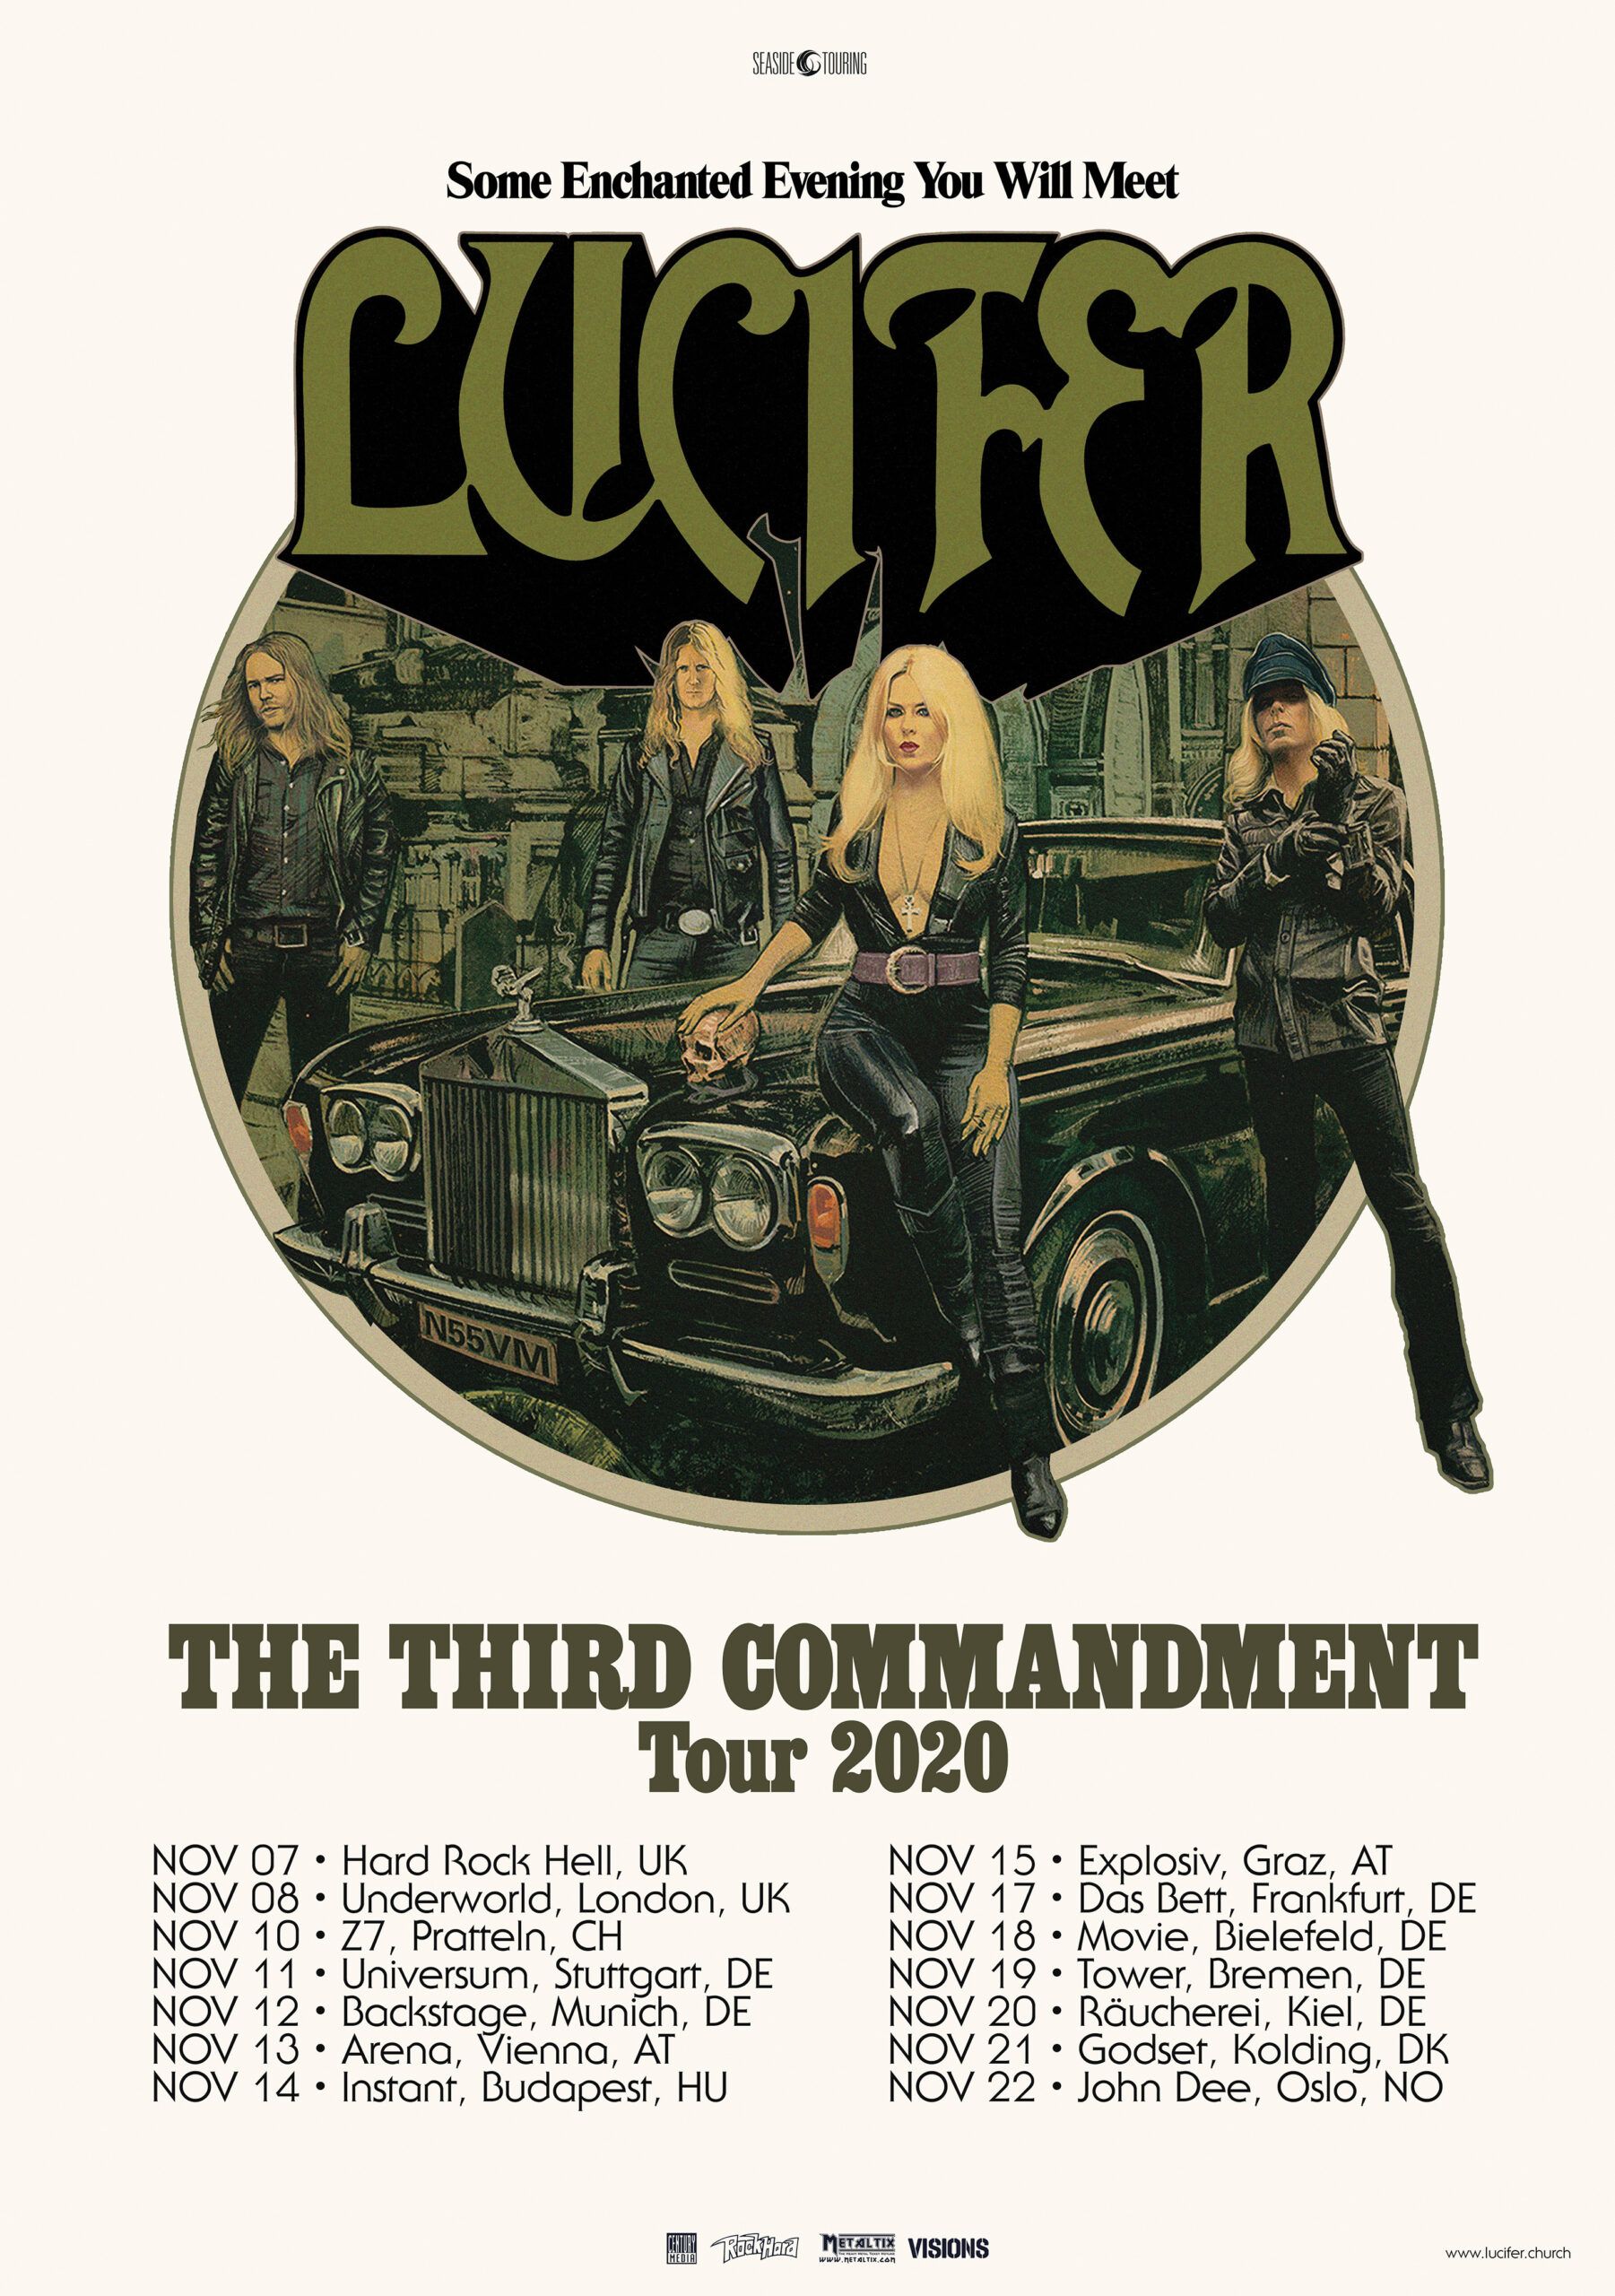 Mai-Tour auf 2021 verschoben, Konzerte im November angekündigt